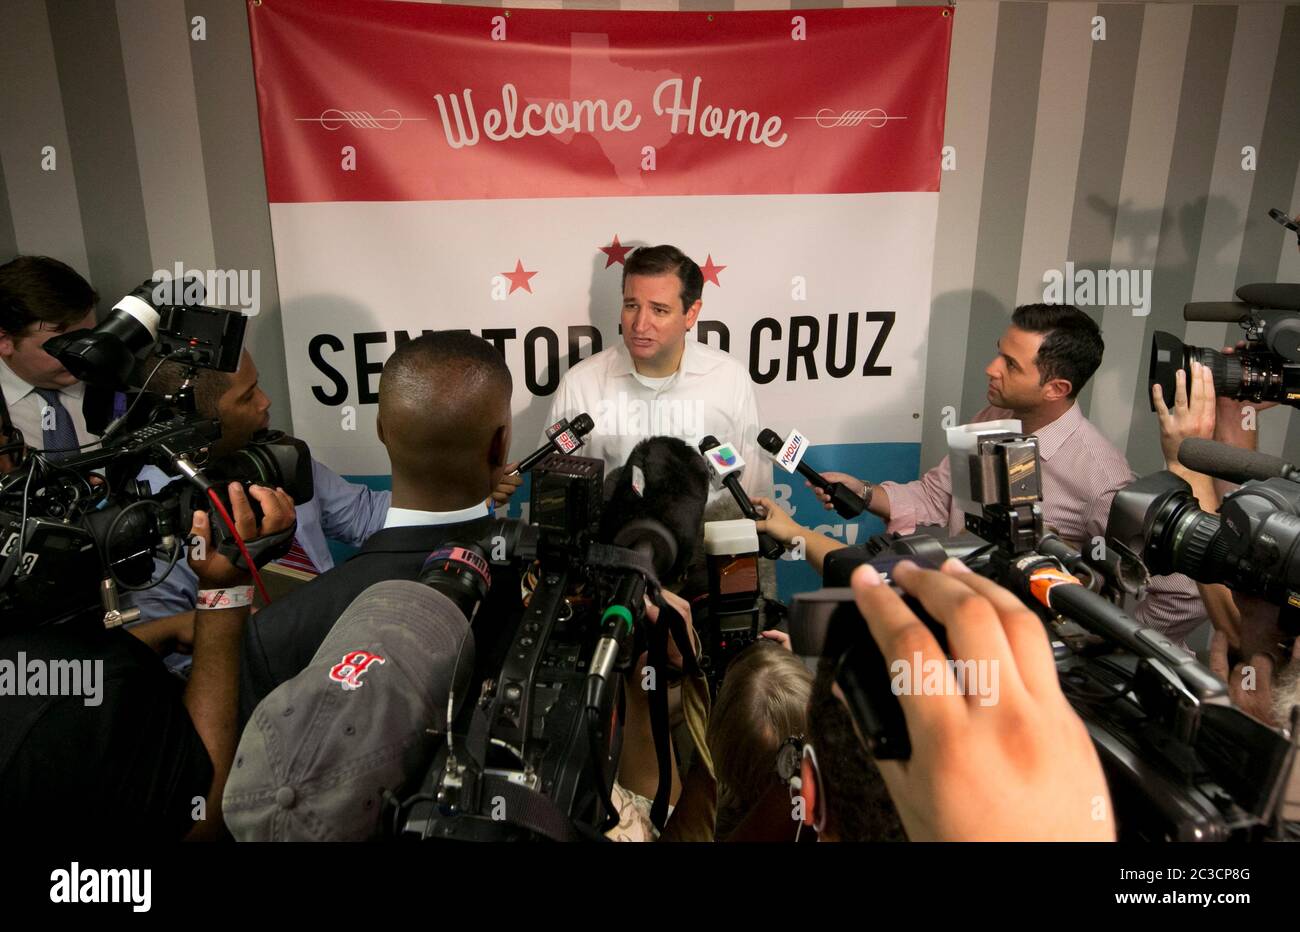 Houston Texas, USA, Oktober 21 2013: Der republikanische Senator Ted Cruz aus Texas spricht mit Reportern während einer Homecoming-Veranstaltung, die von einer lokalen Tea Party-Organisation ausgerichtet wird. ©Marjorie Kamys Cotera/Daemmrich Stockfoto